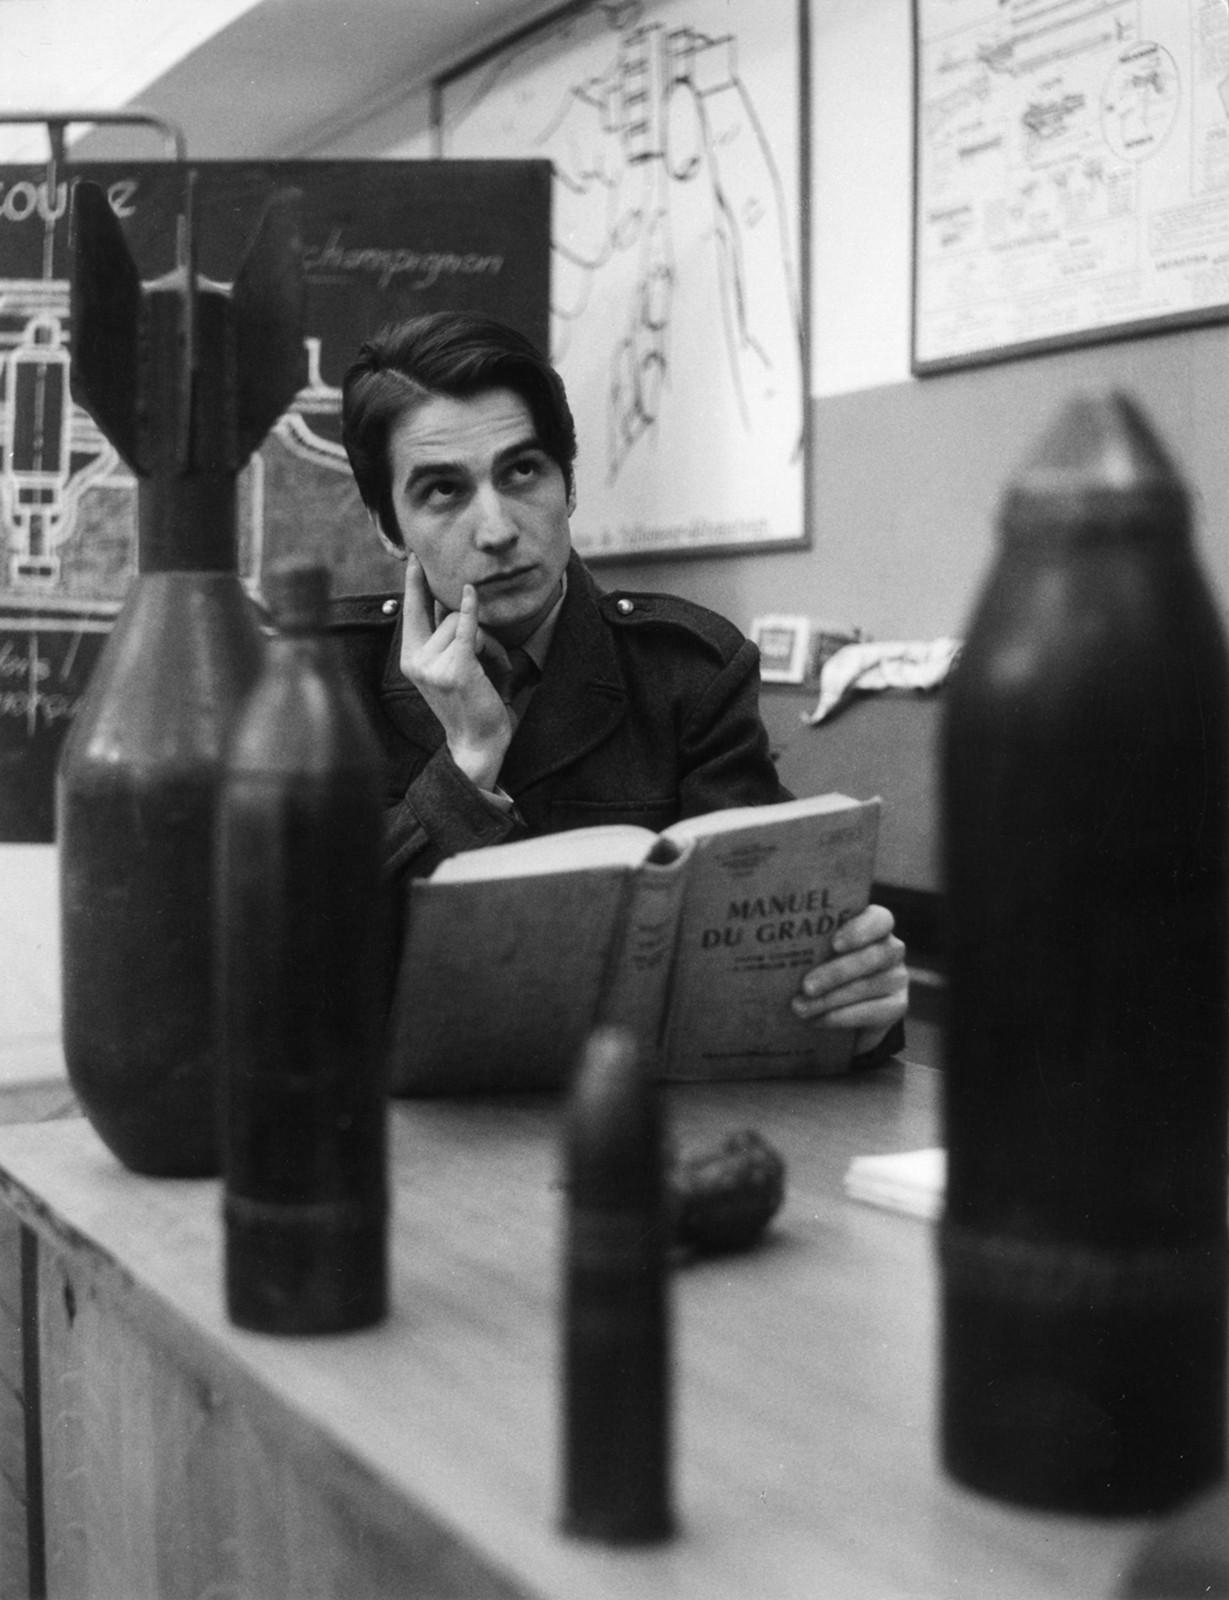 Baisers volés (François Truffaut, 1968). Paris, 1968.